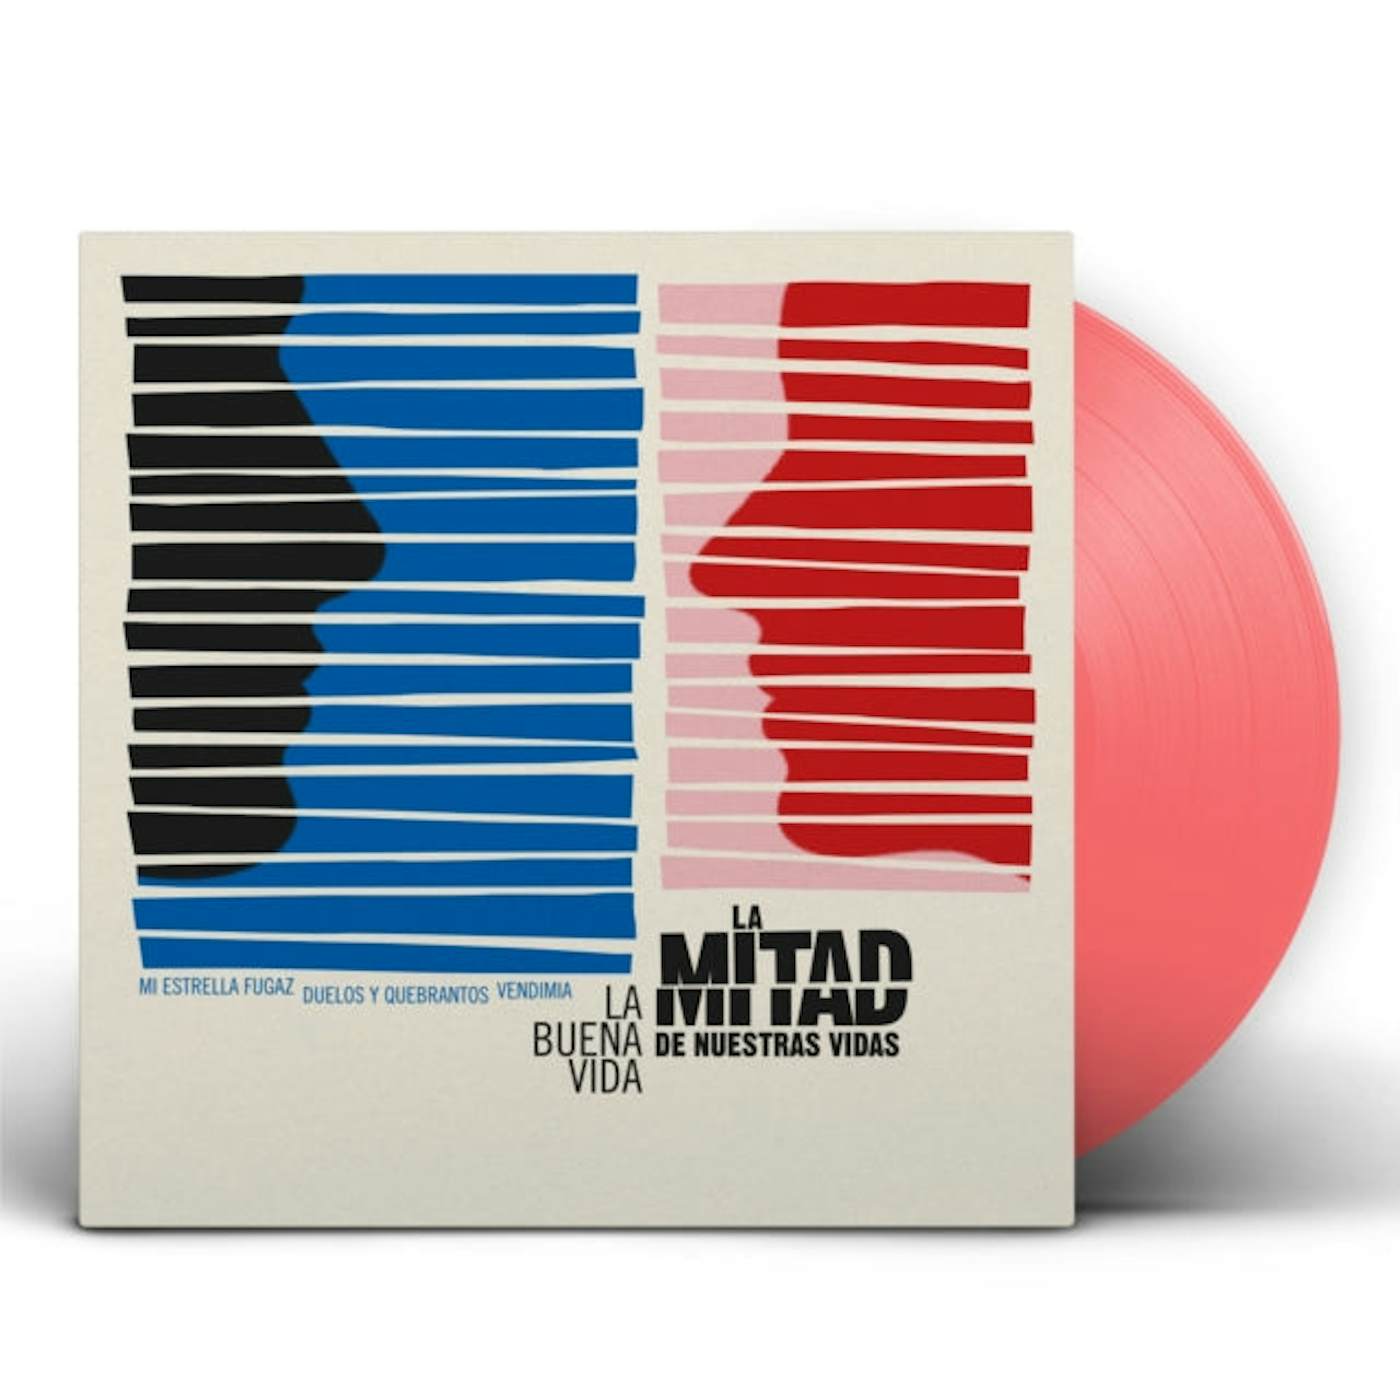 La Buena Vida LP Vinyl Record - La Mitad De Nuestras Vidas (Pink Vinyl)